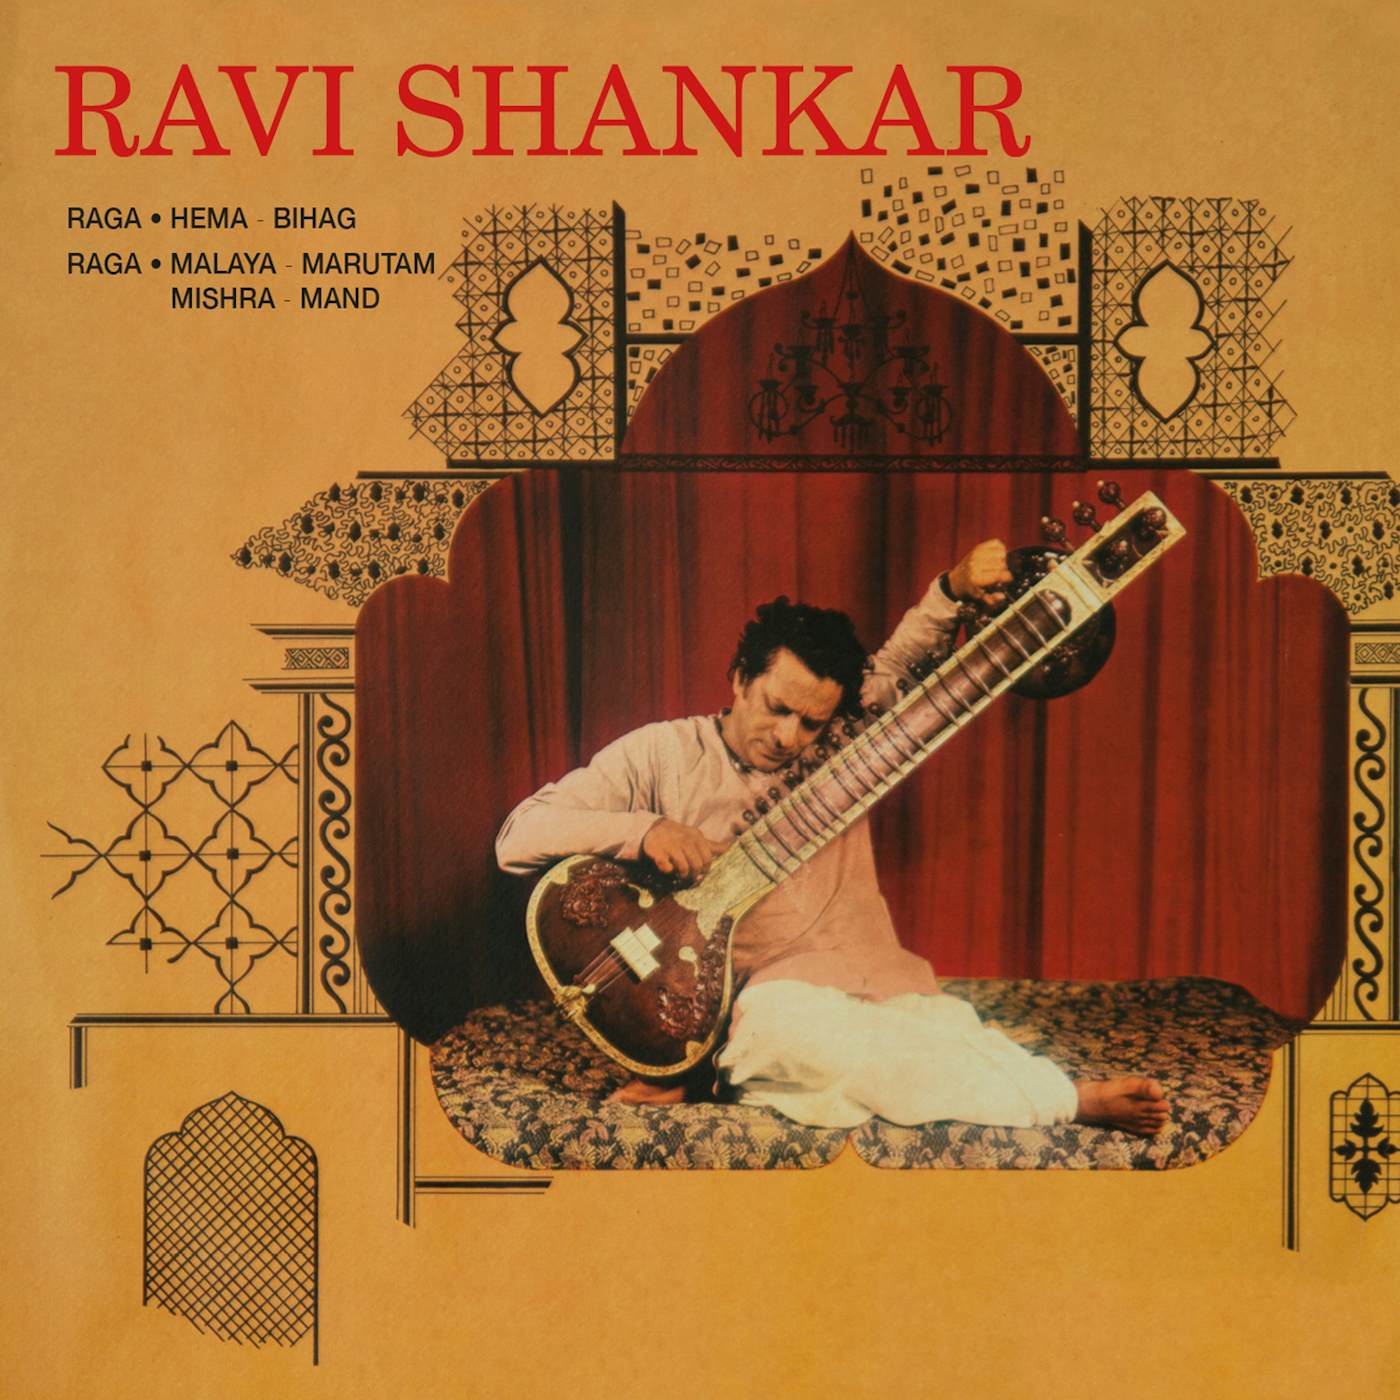 Ravi Shankar RAGA: HEMA-BIHAG / MALAYA MARUTAM / MISHRA-MAND CD